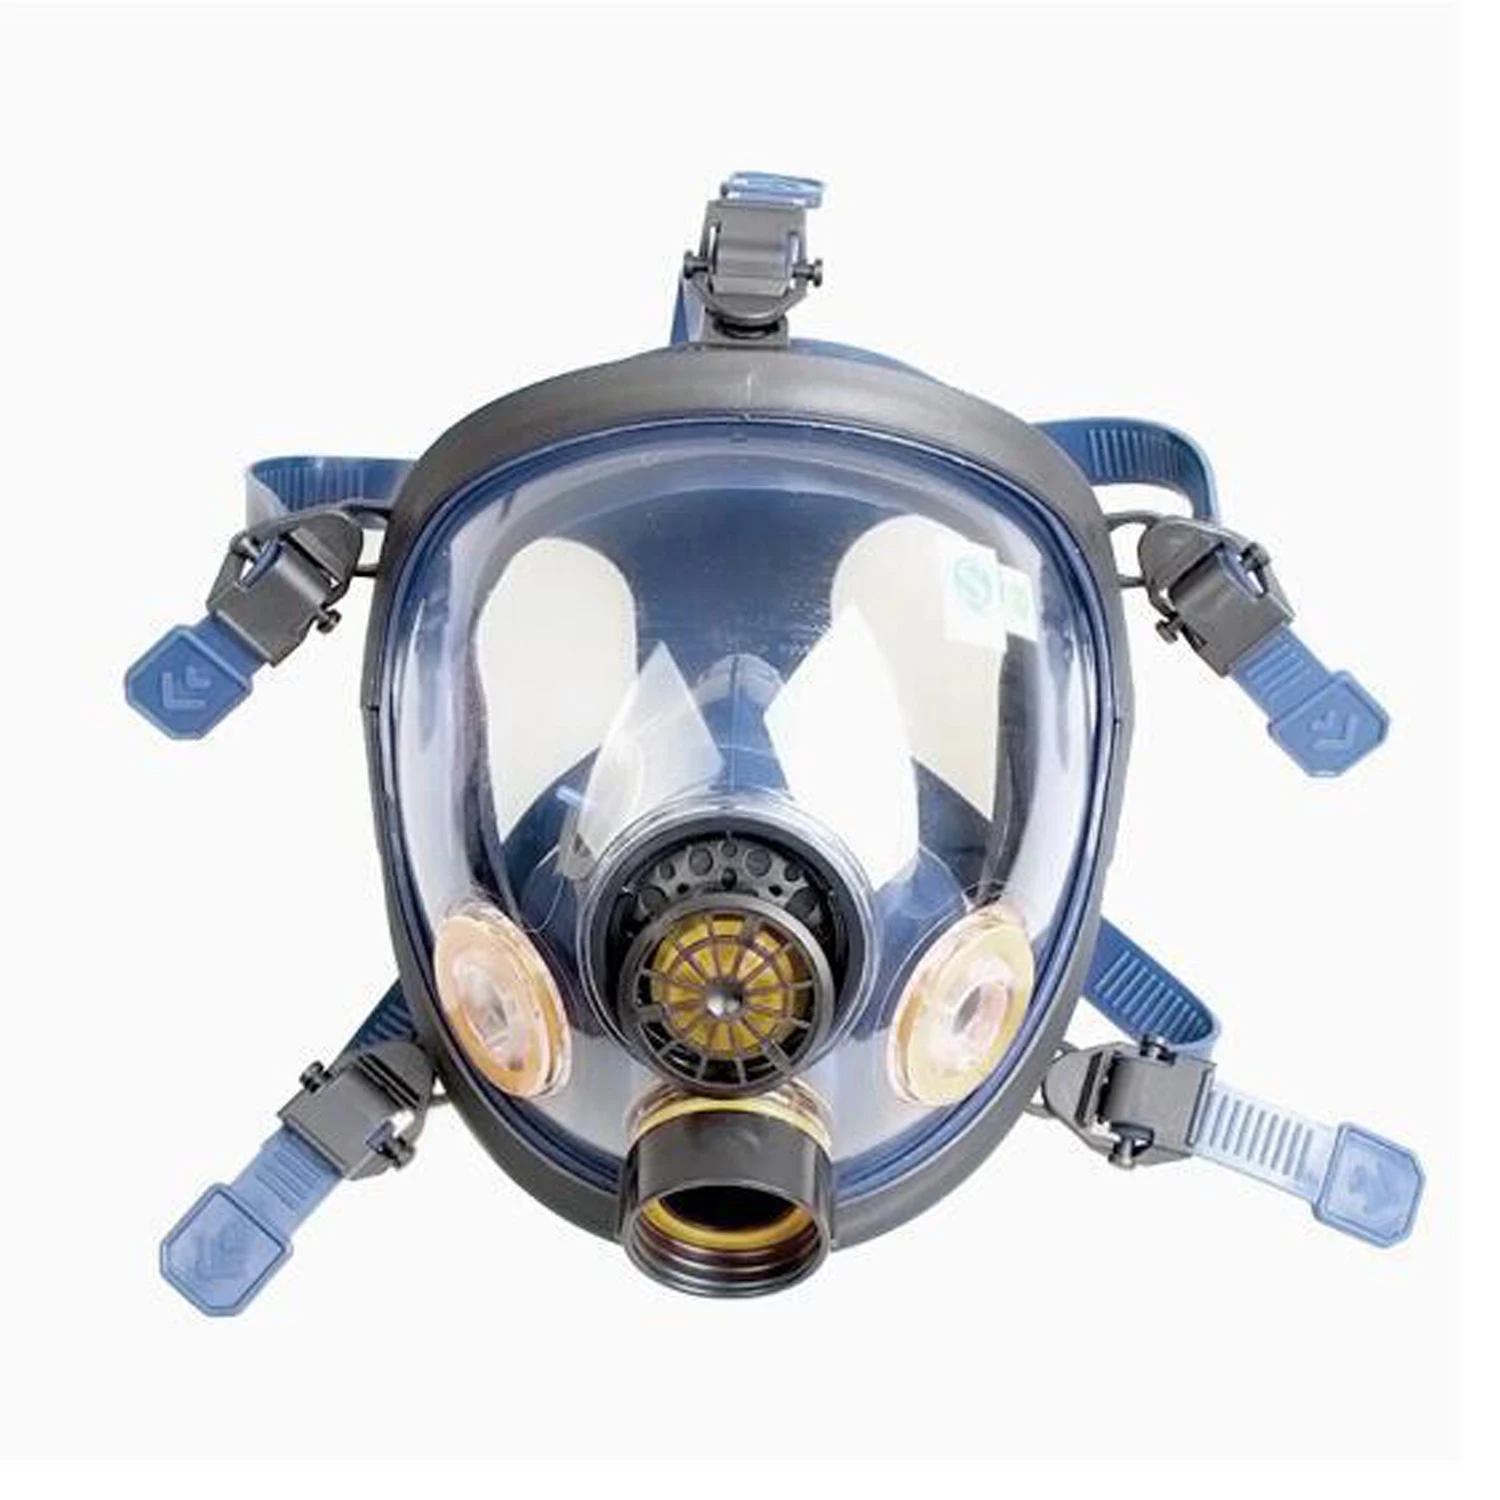 S100X-2 противогаз для всего лица, одна канистра, Антивирусная маска, силиконовый респиратор, маска для покраски, химикатов, пестицидов